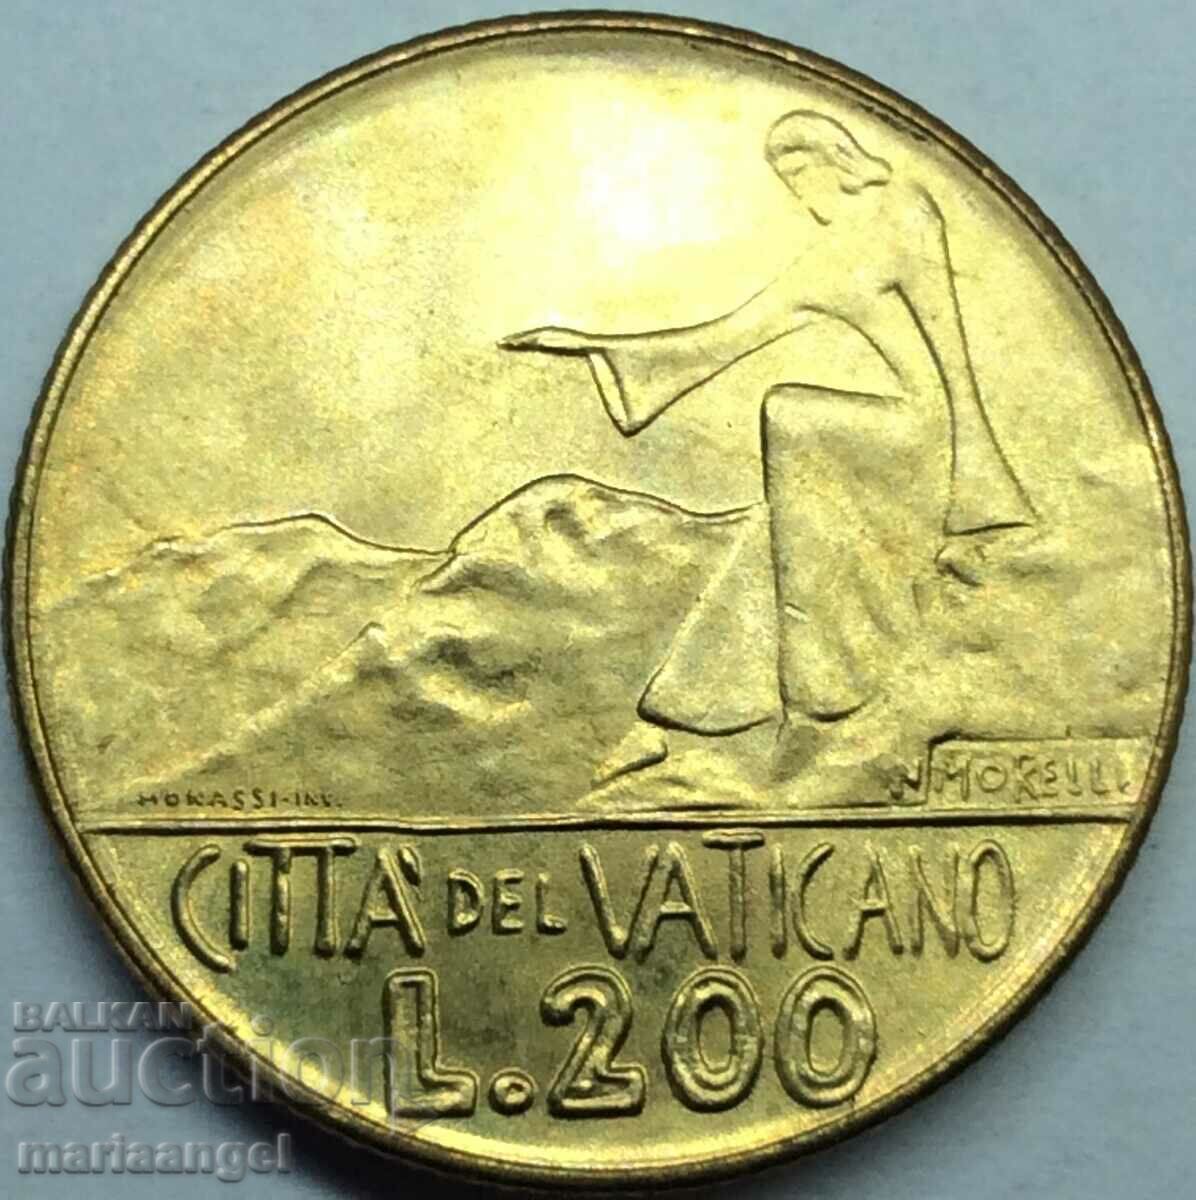 200 lire 1978 Vatican